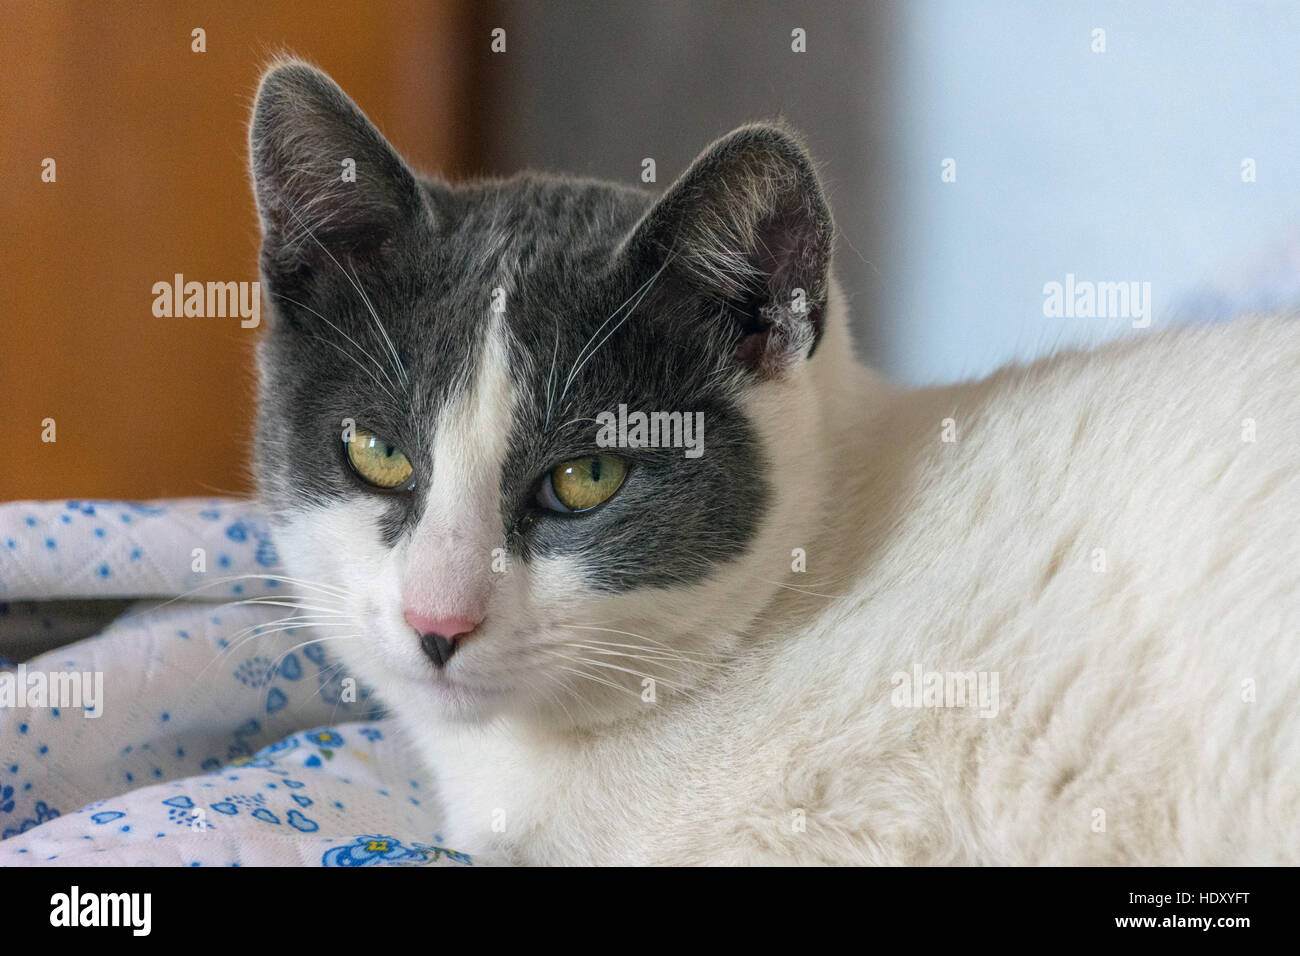 Grigio e bianco gatto con gli occhi gialli guardando la fotocamera Foto Stock